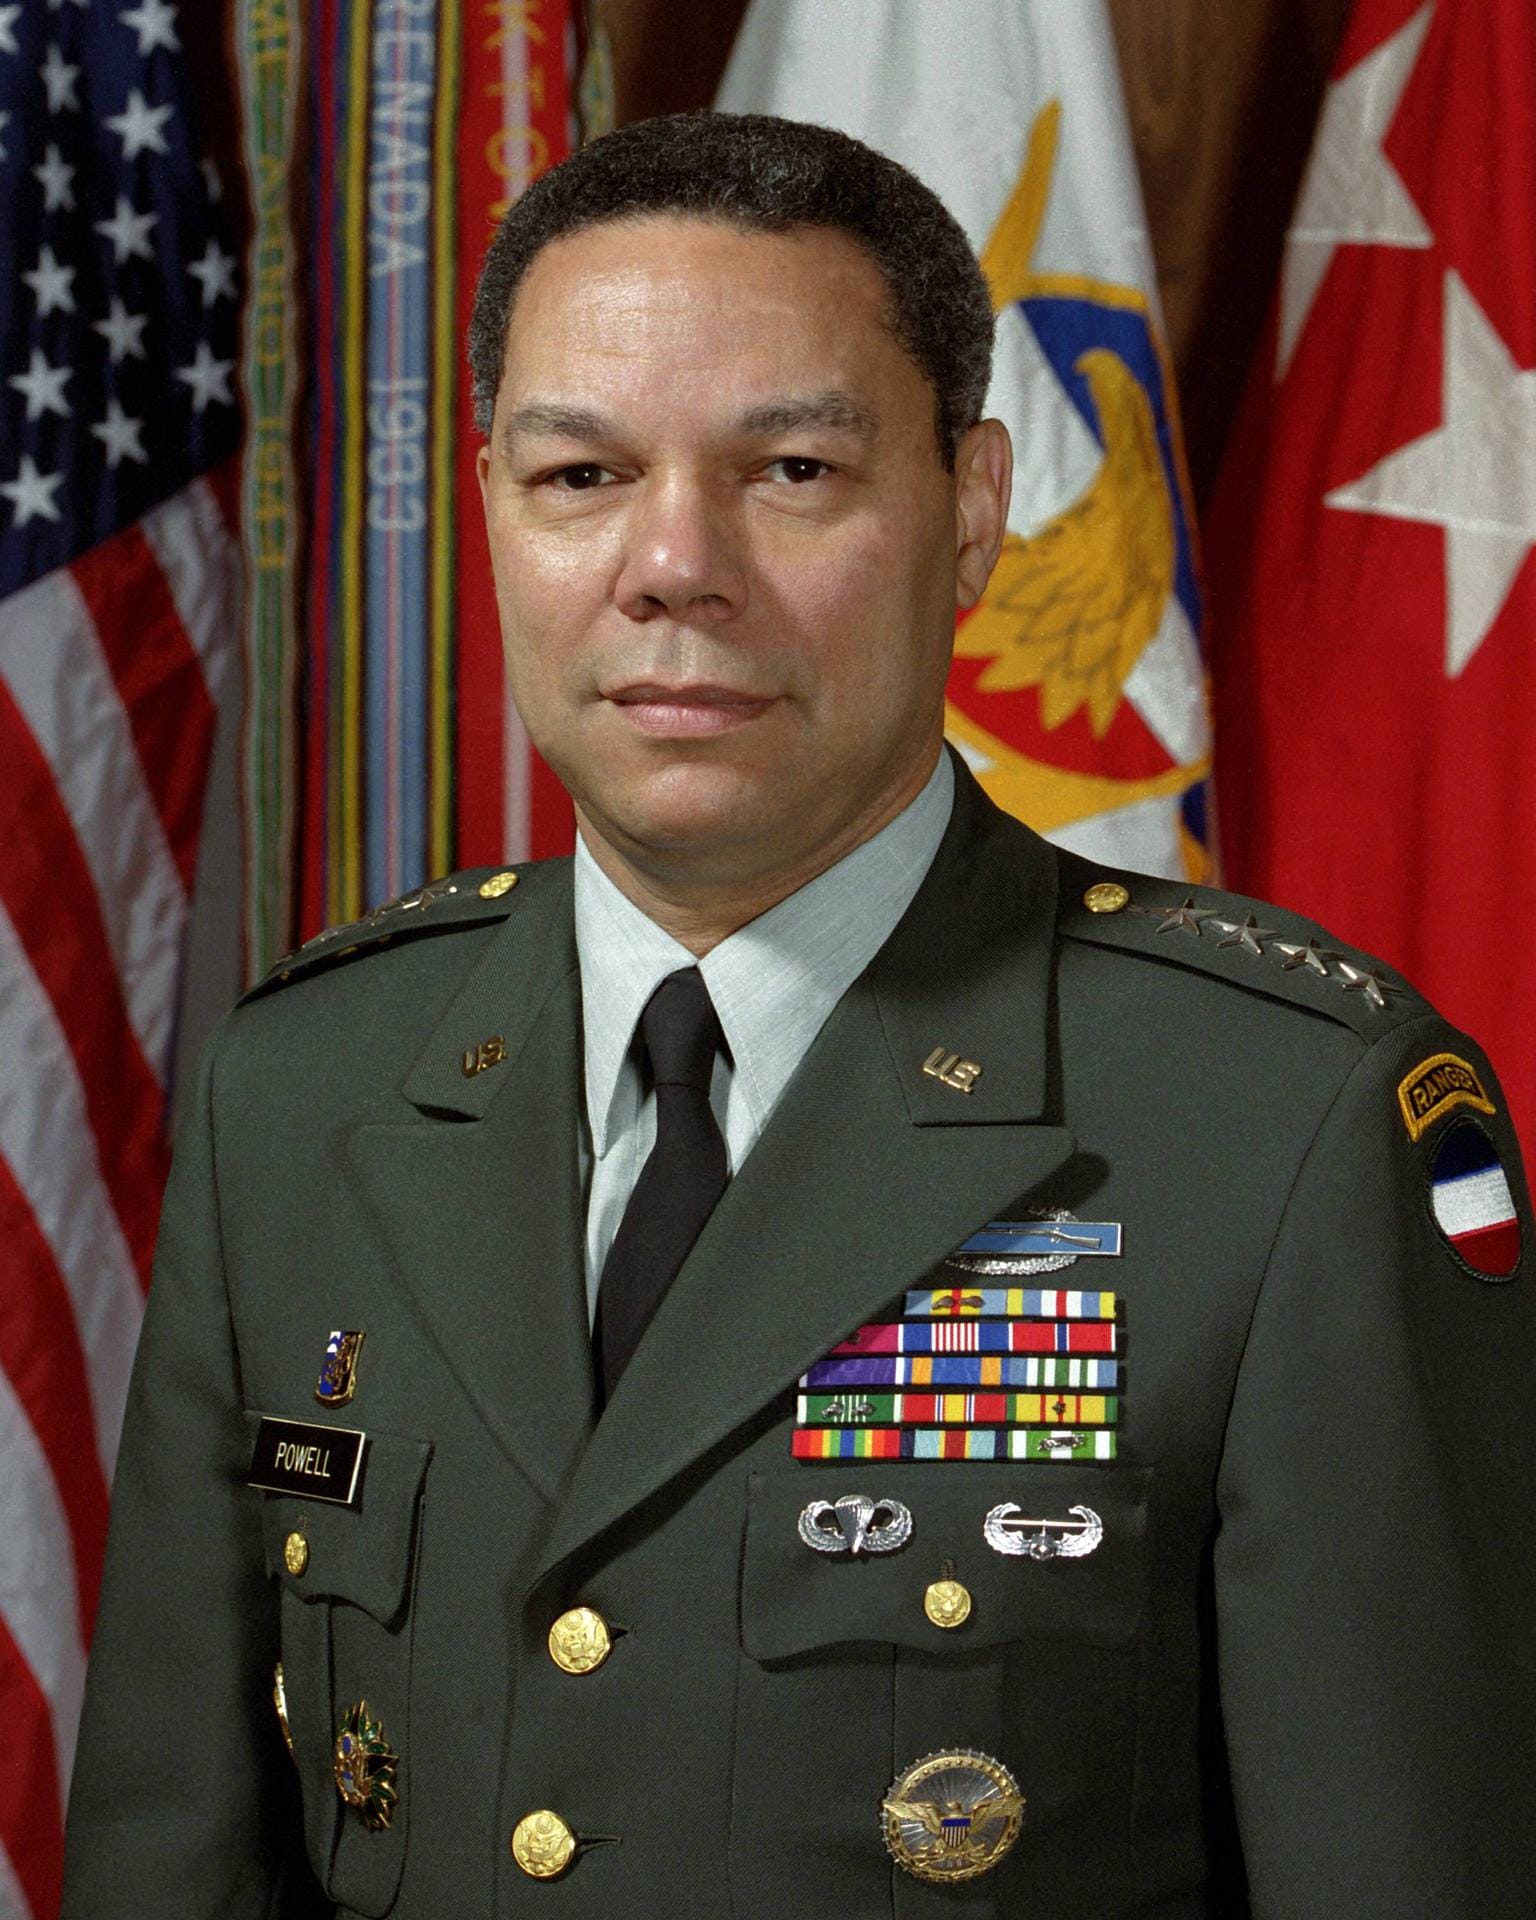 Vor seiner Zeit als Außenminister hatte Powell Karriere in der US-Armee gemacht, wo er es bis zum Vier-Sterne-General brachte. Von 1989 bis 1993 war Powell Generalstabschef der US-Regierung – ebenfalls als erster Afroamerikaner in dieser Position.